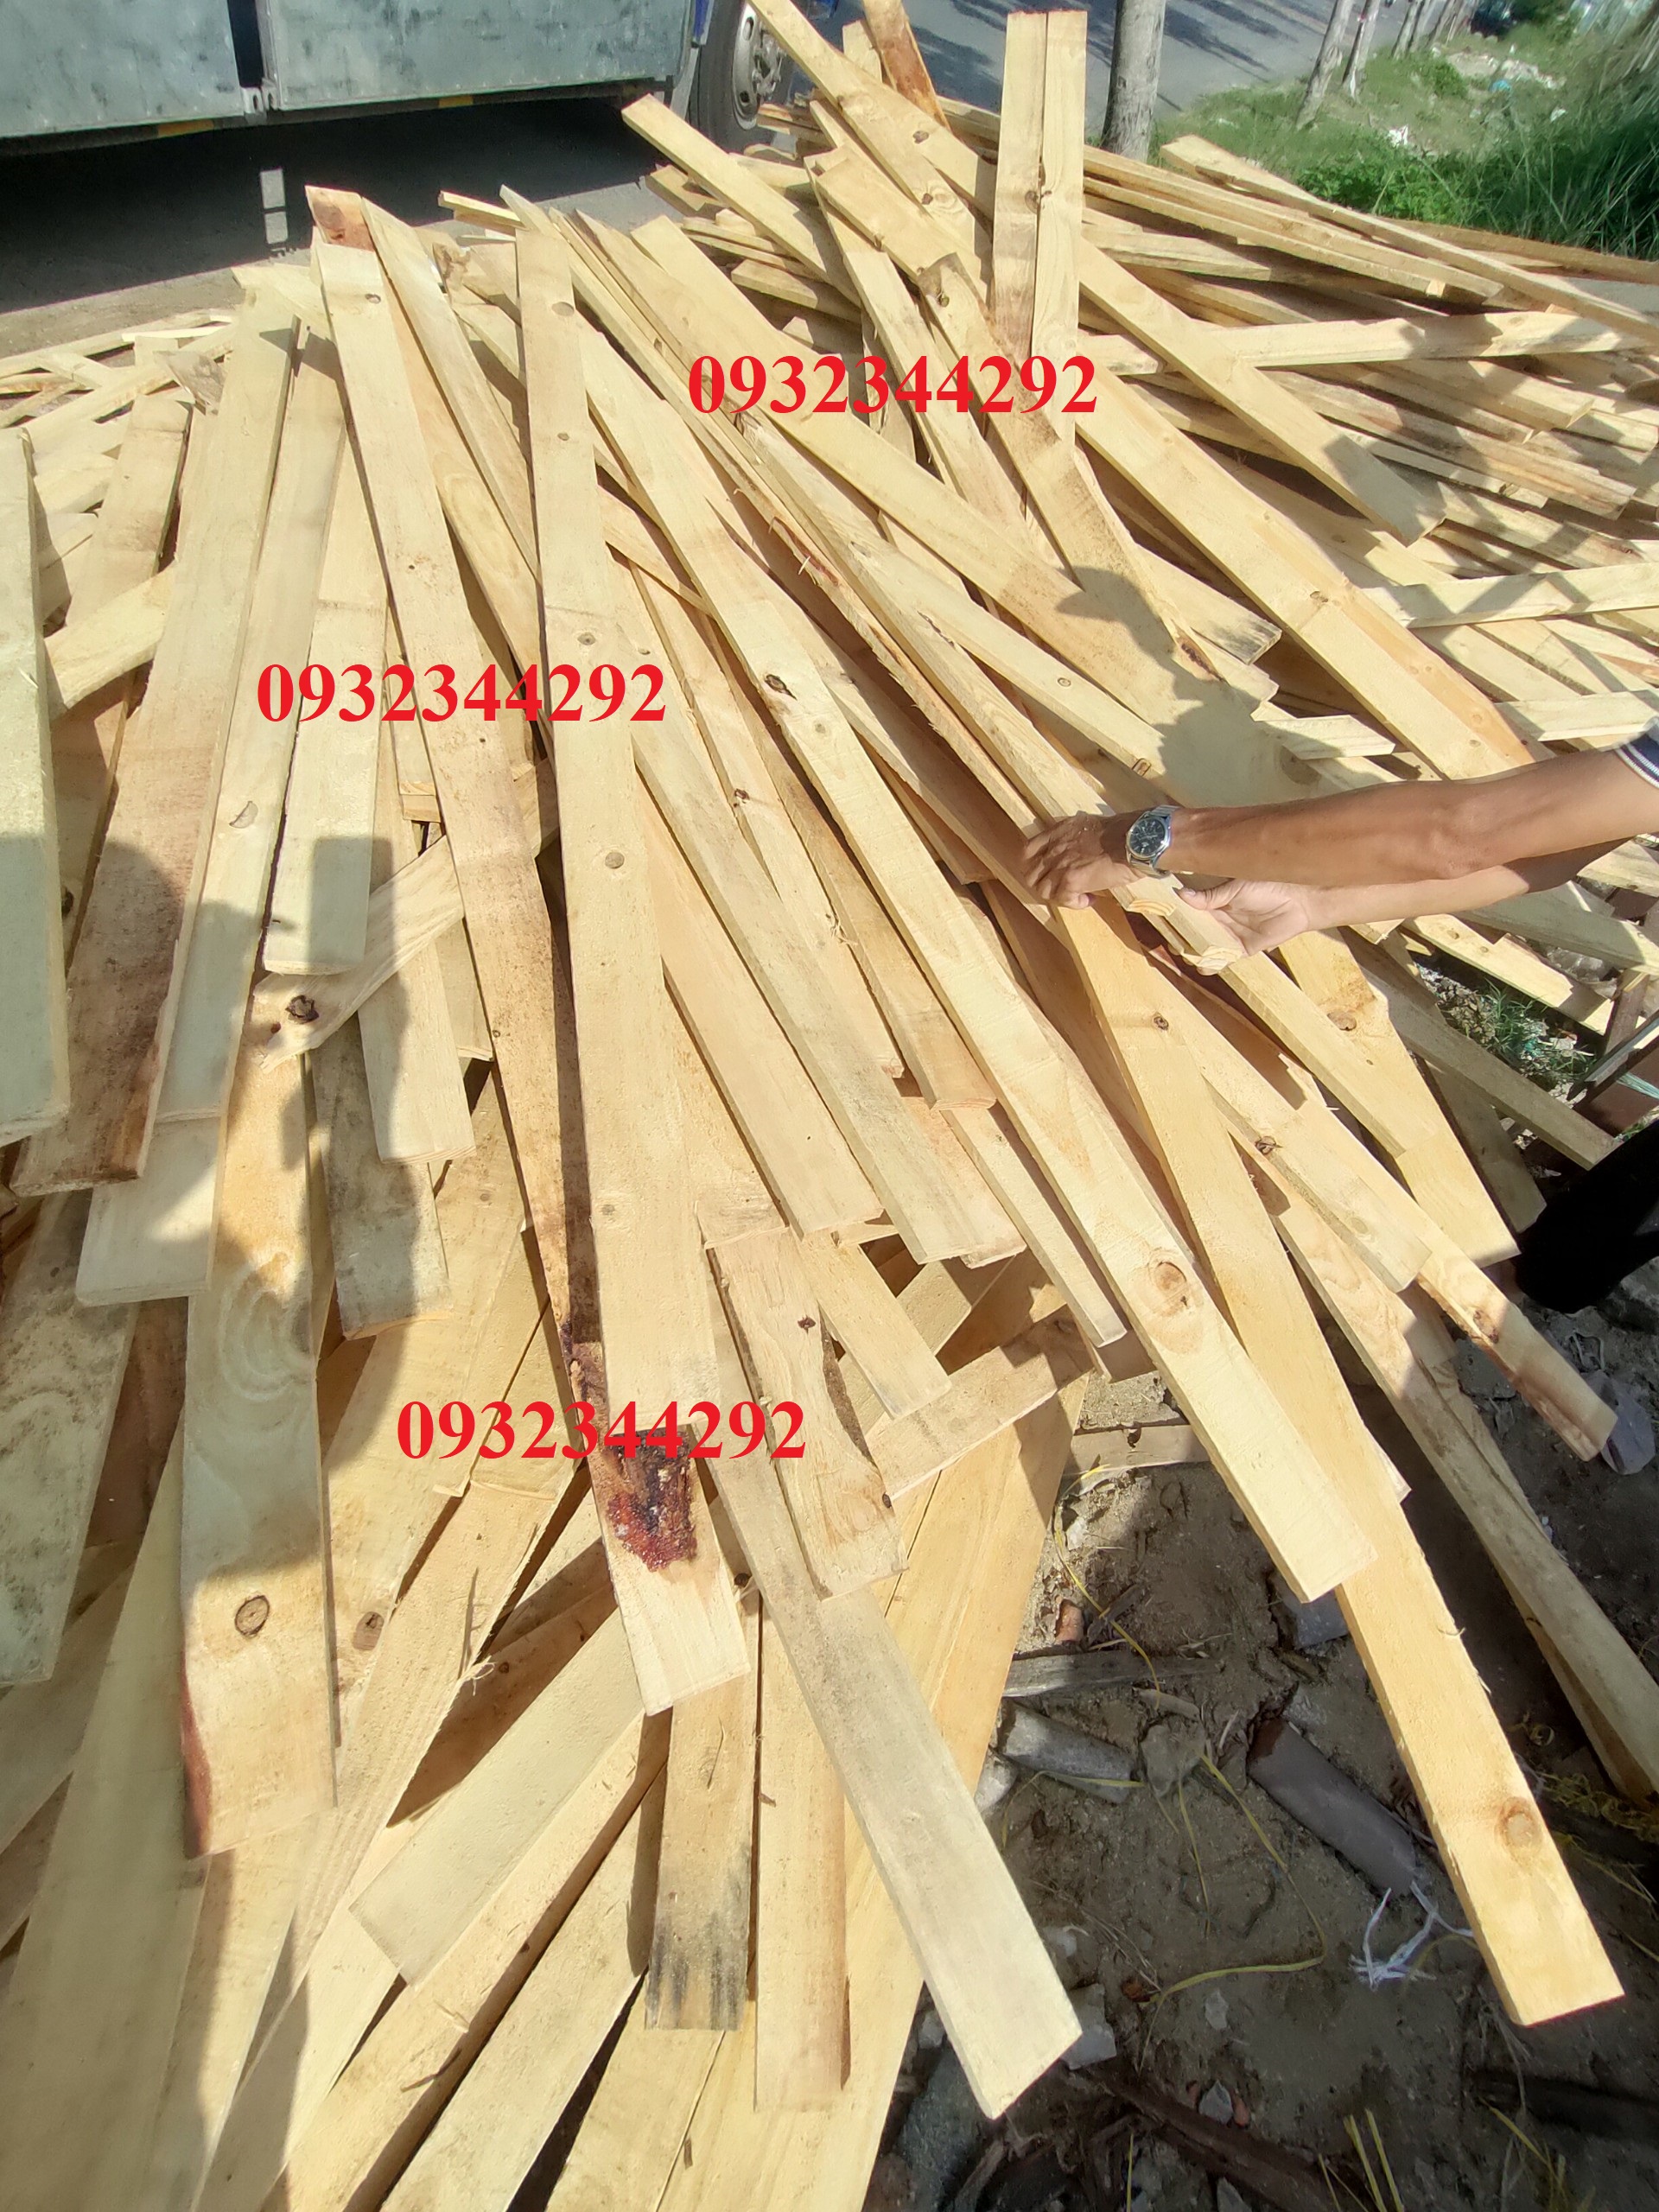 Địa chỉ bán gỗ thông pallet giá rẻ tại Đà Nẵng - 50-54 Vân Đồn